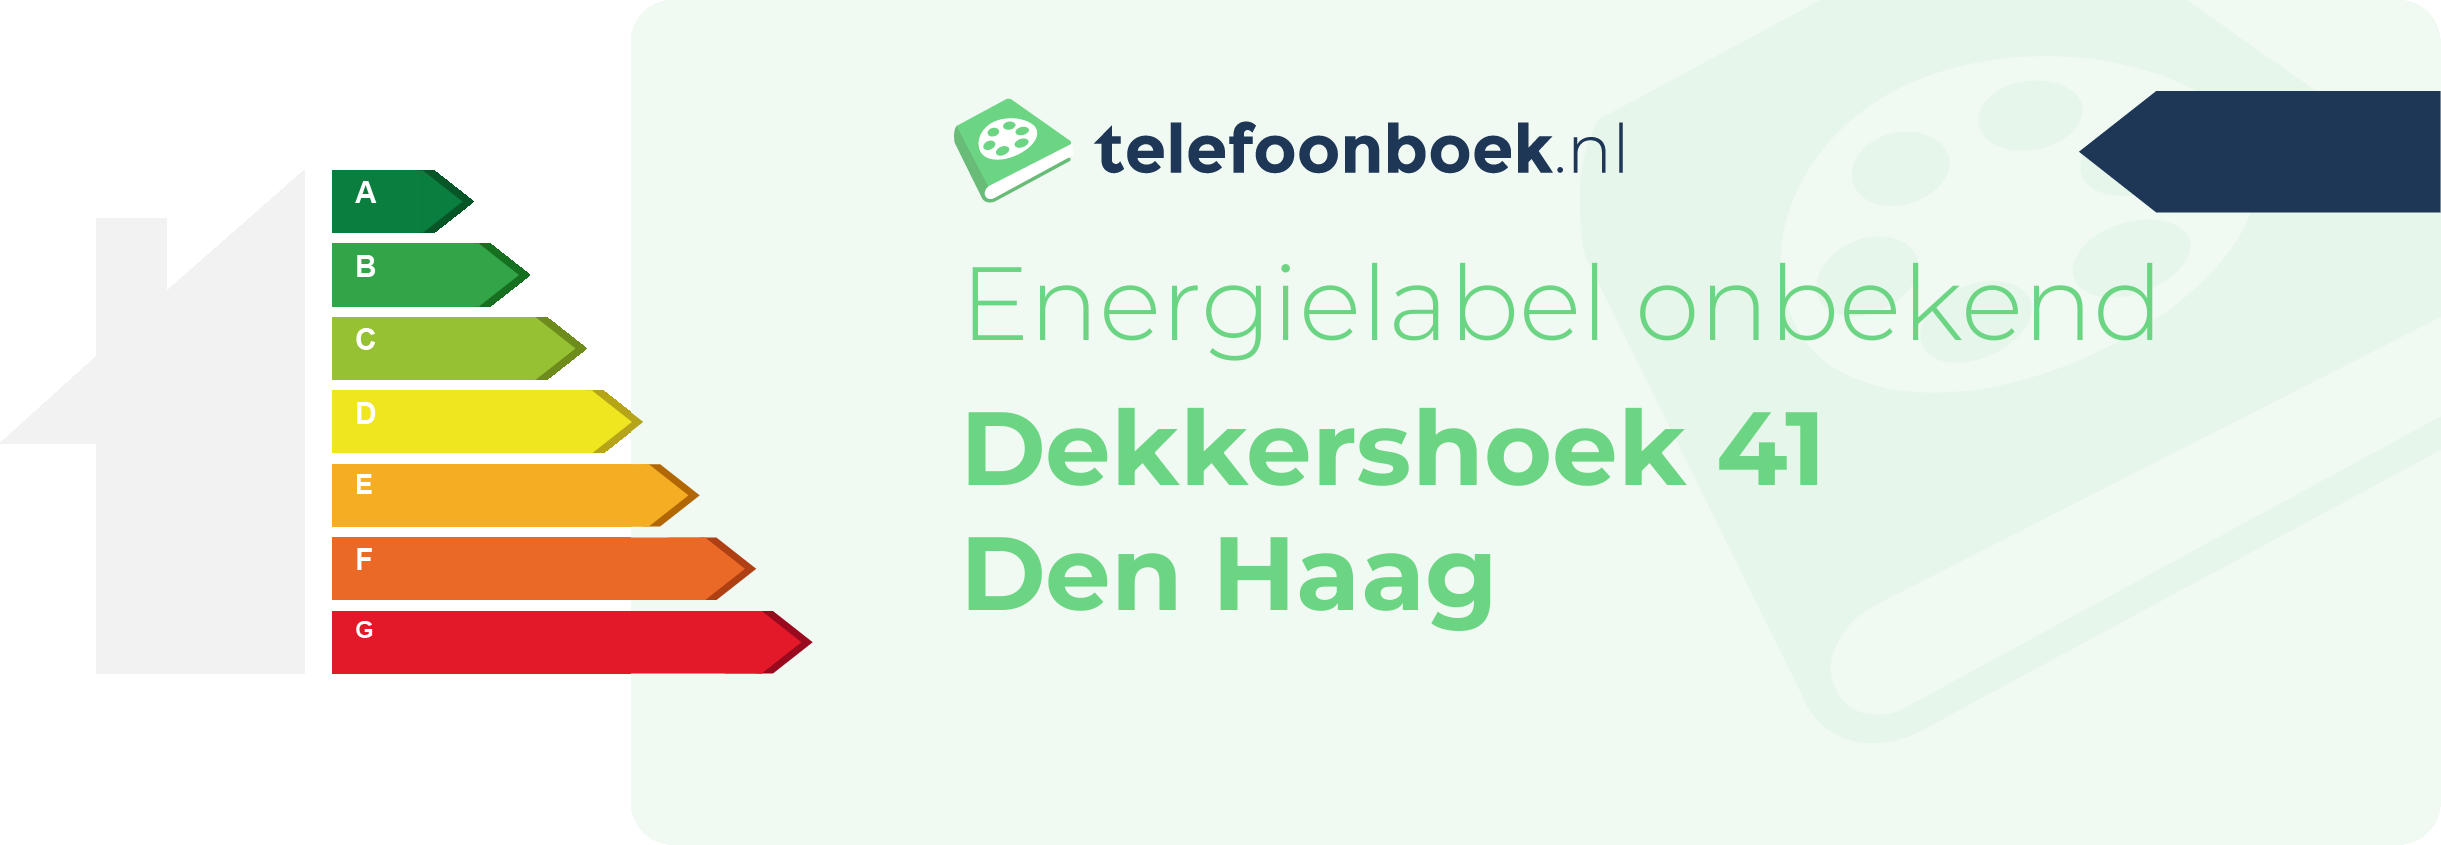 Energielabel Dekkershoek 41 Den Haag